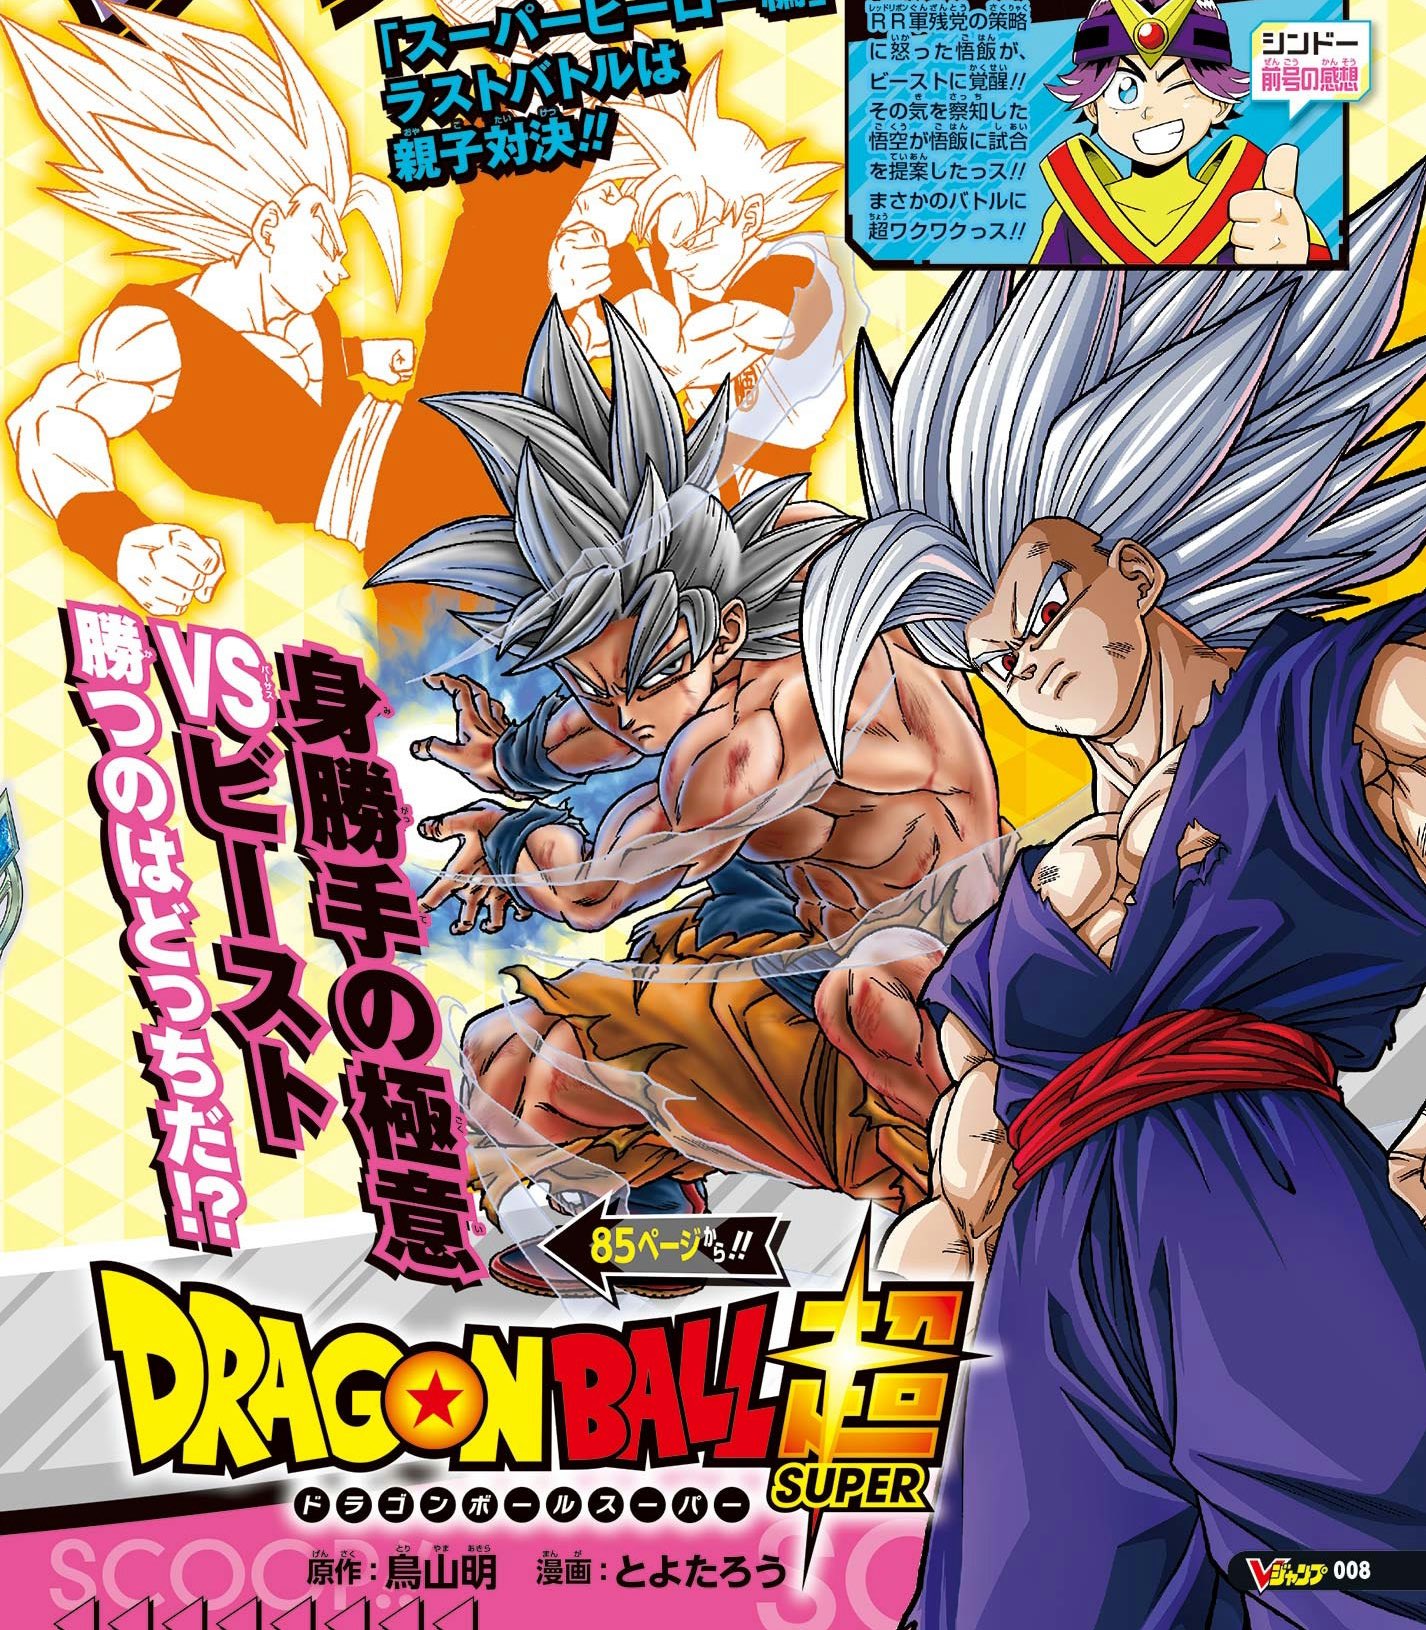 Ditinggal Akira Toriyama, Dragon Ball Super Resmi Hiatus